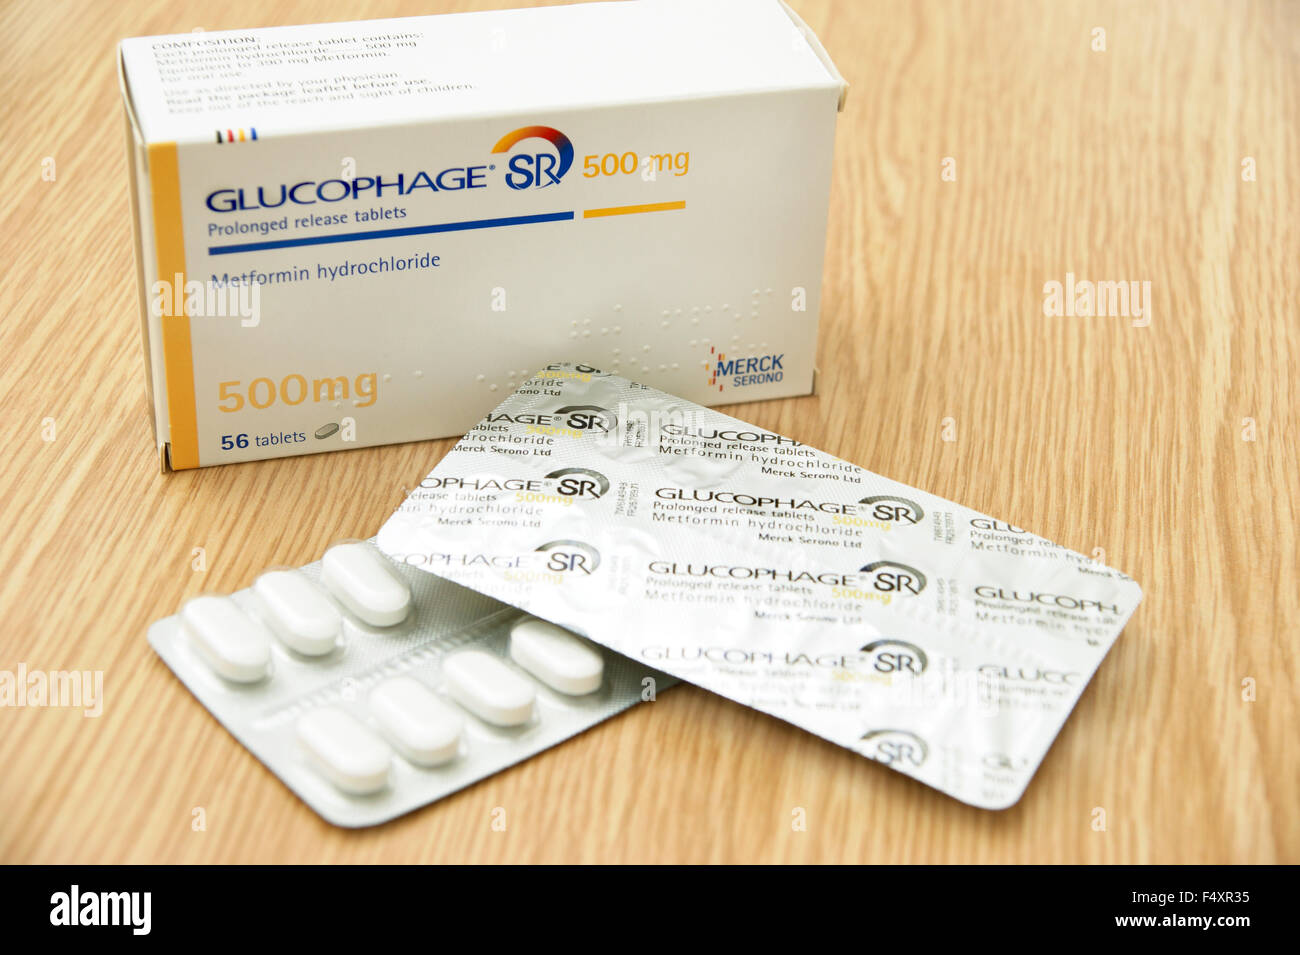 Glucophage Metformin Hydrochlorid verlängert freigegebene Tabletten - Behandlung von Diabetes durch das Niveau des Zuckers im Blut regulieren Stockfoto